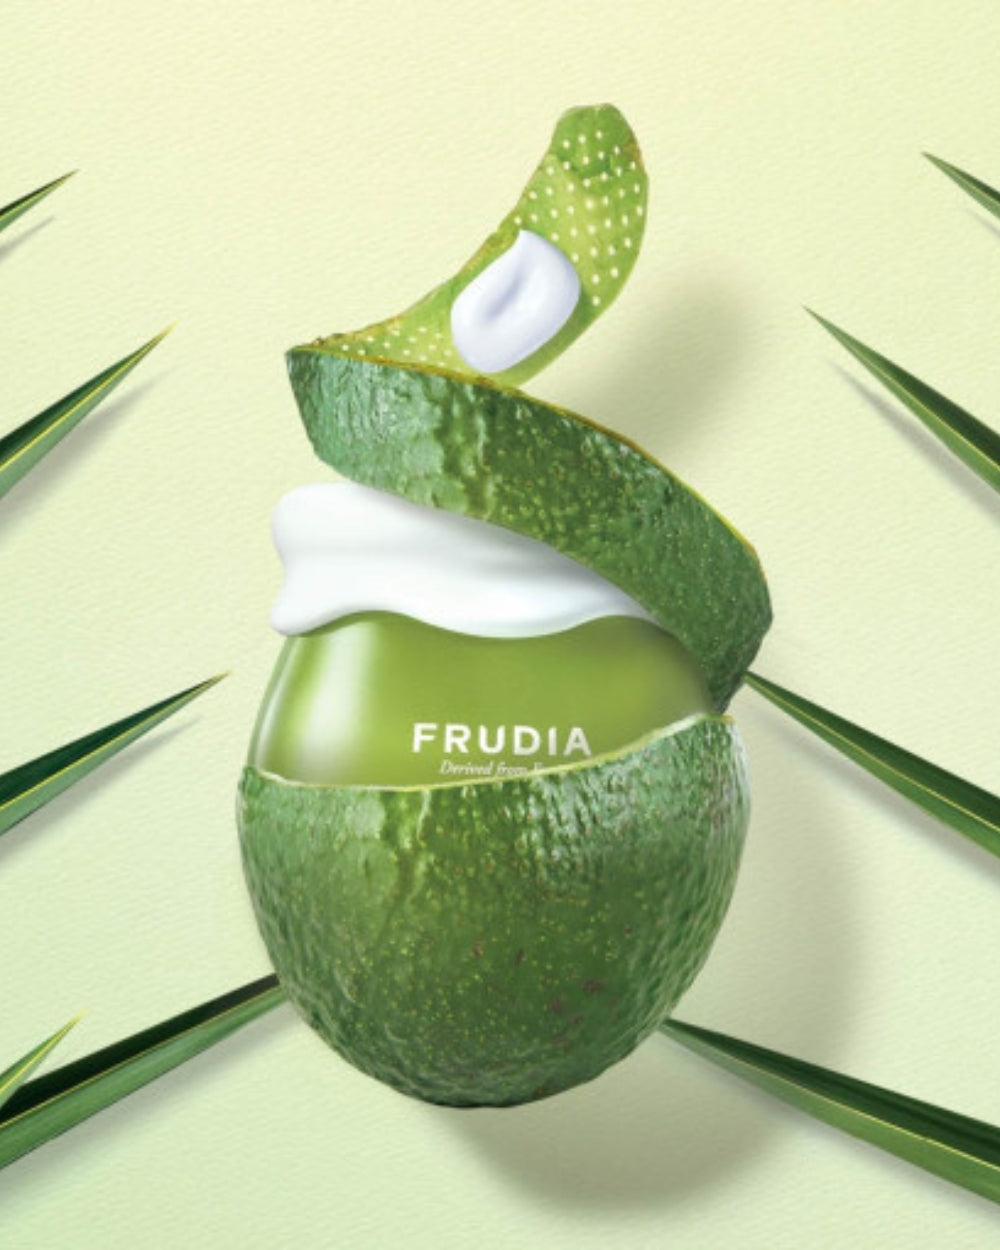 Frudia - Avocado Relief Cream